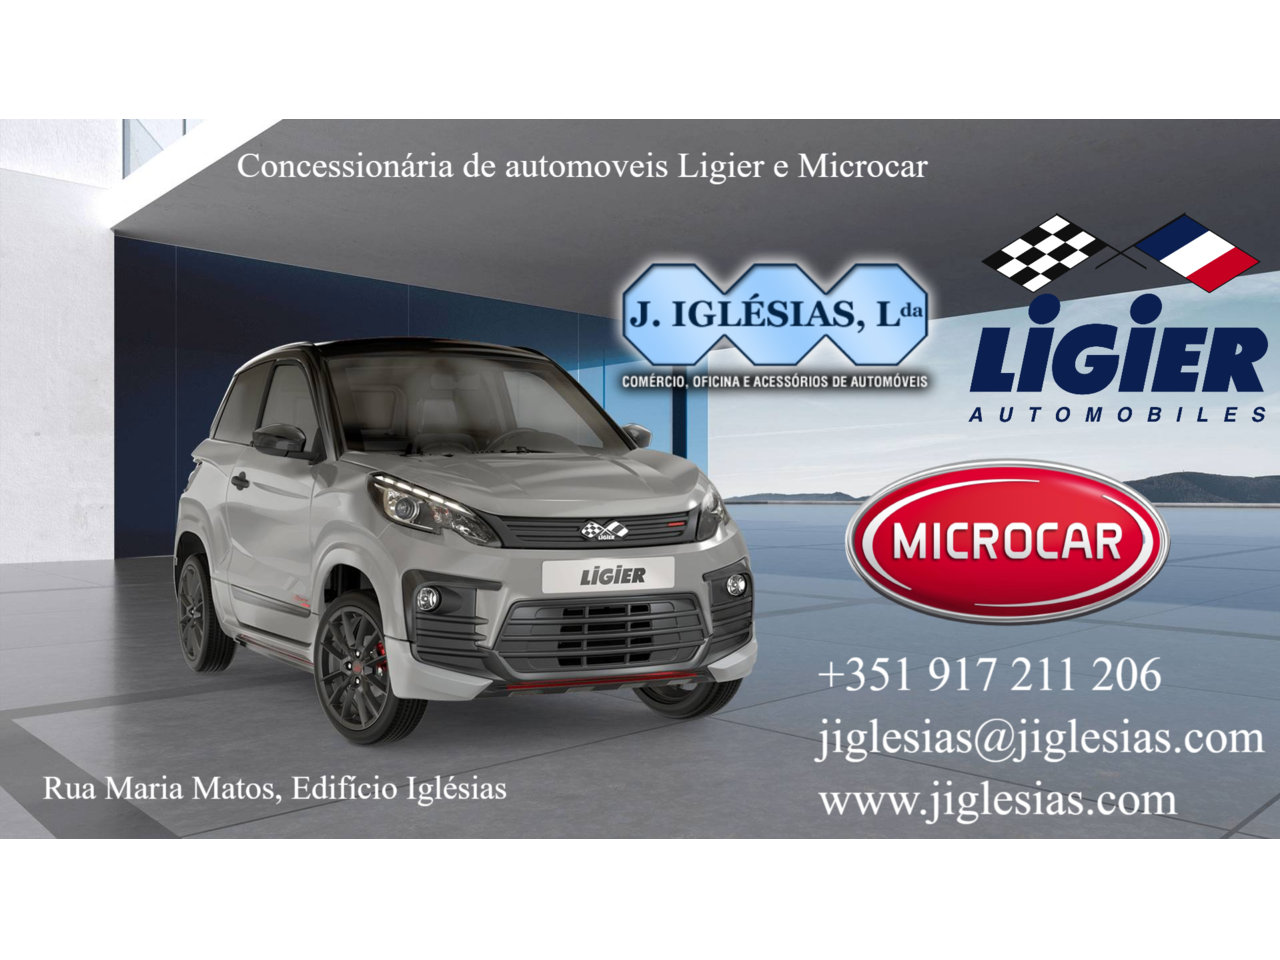 Ligier Microcar JIglésias - 1